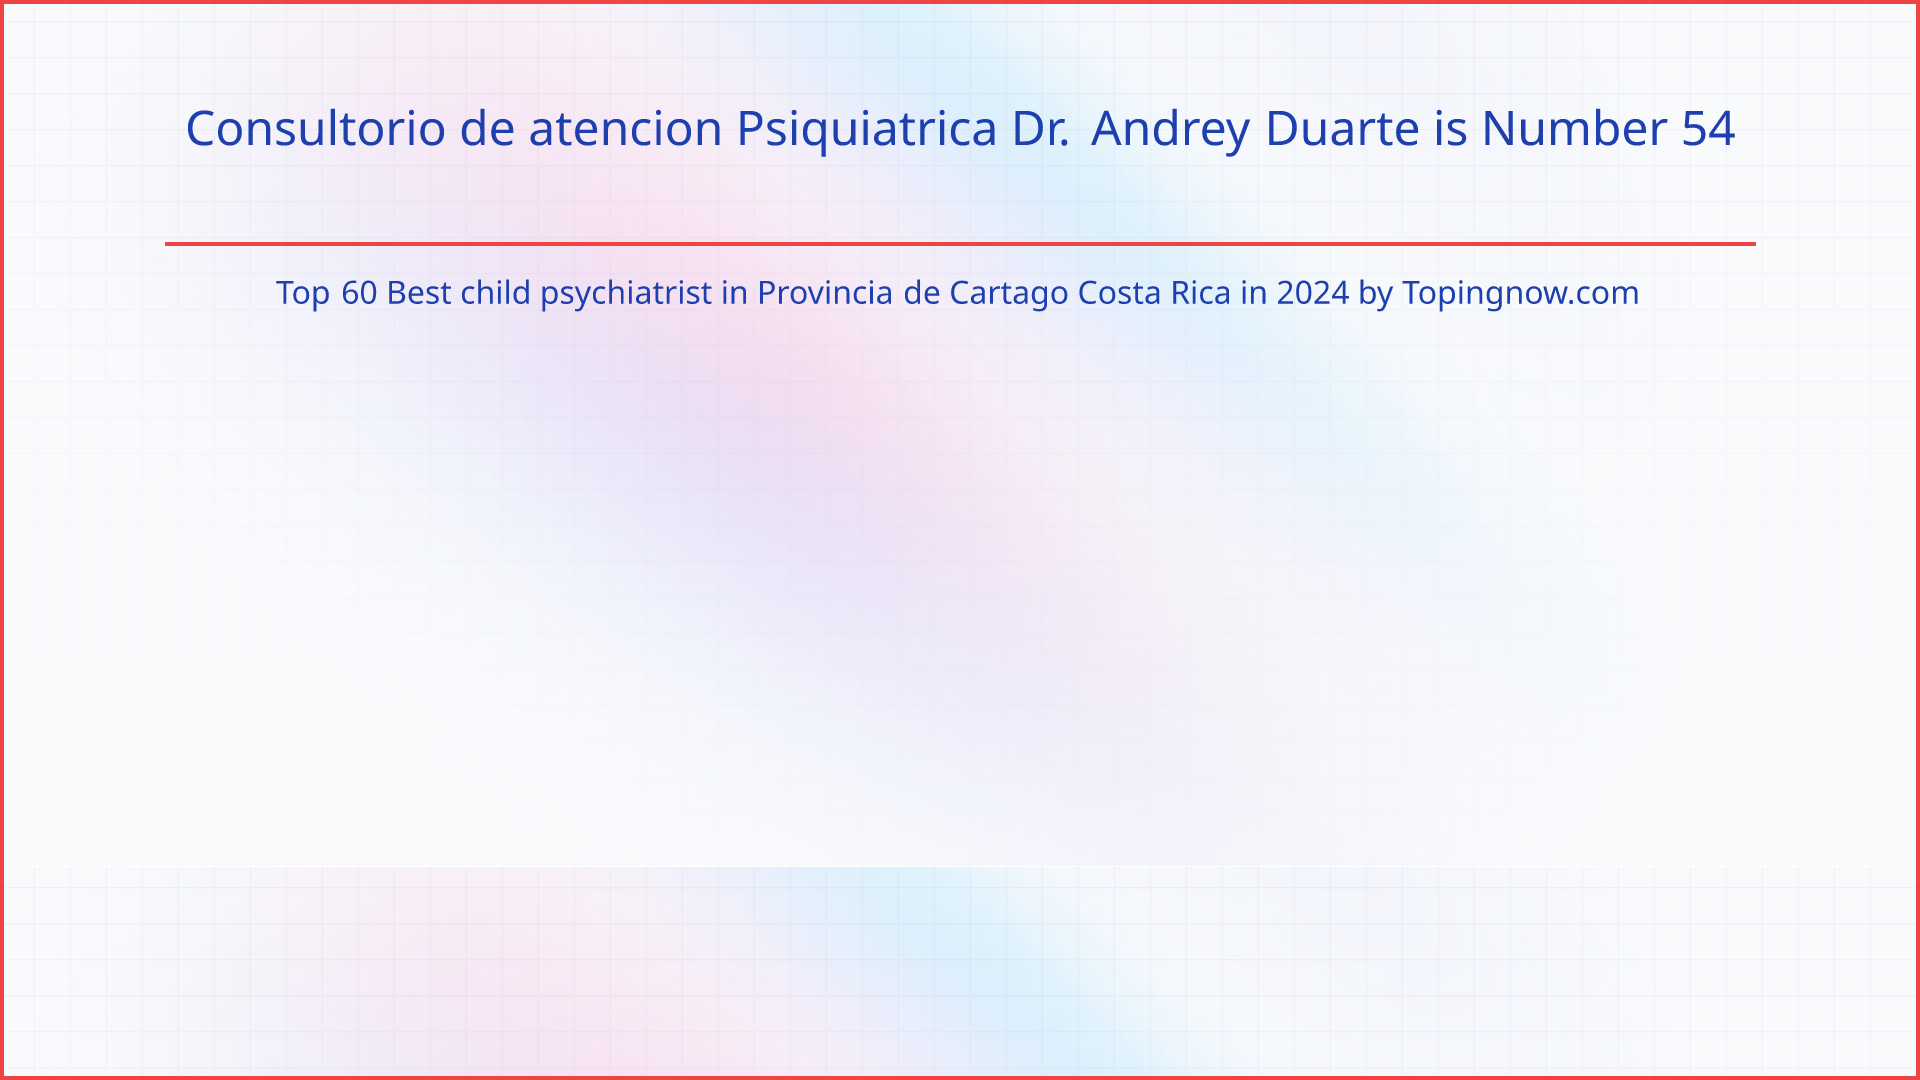 Consultorio de atencion Psiquiatrica Dr. Andrey Duarte: Top 60 Best child psychiatrist in Provincia de Cartago Costa Rica in 2024